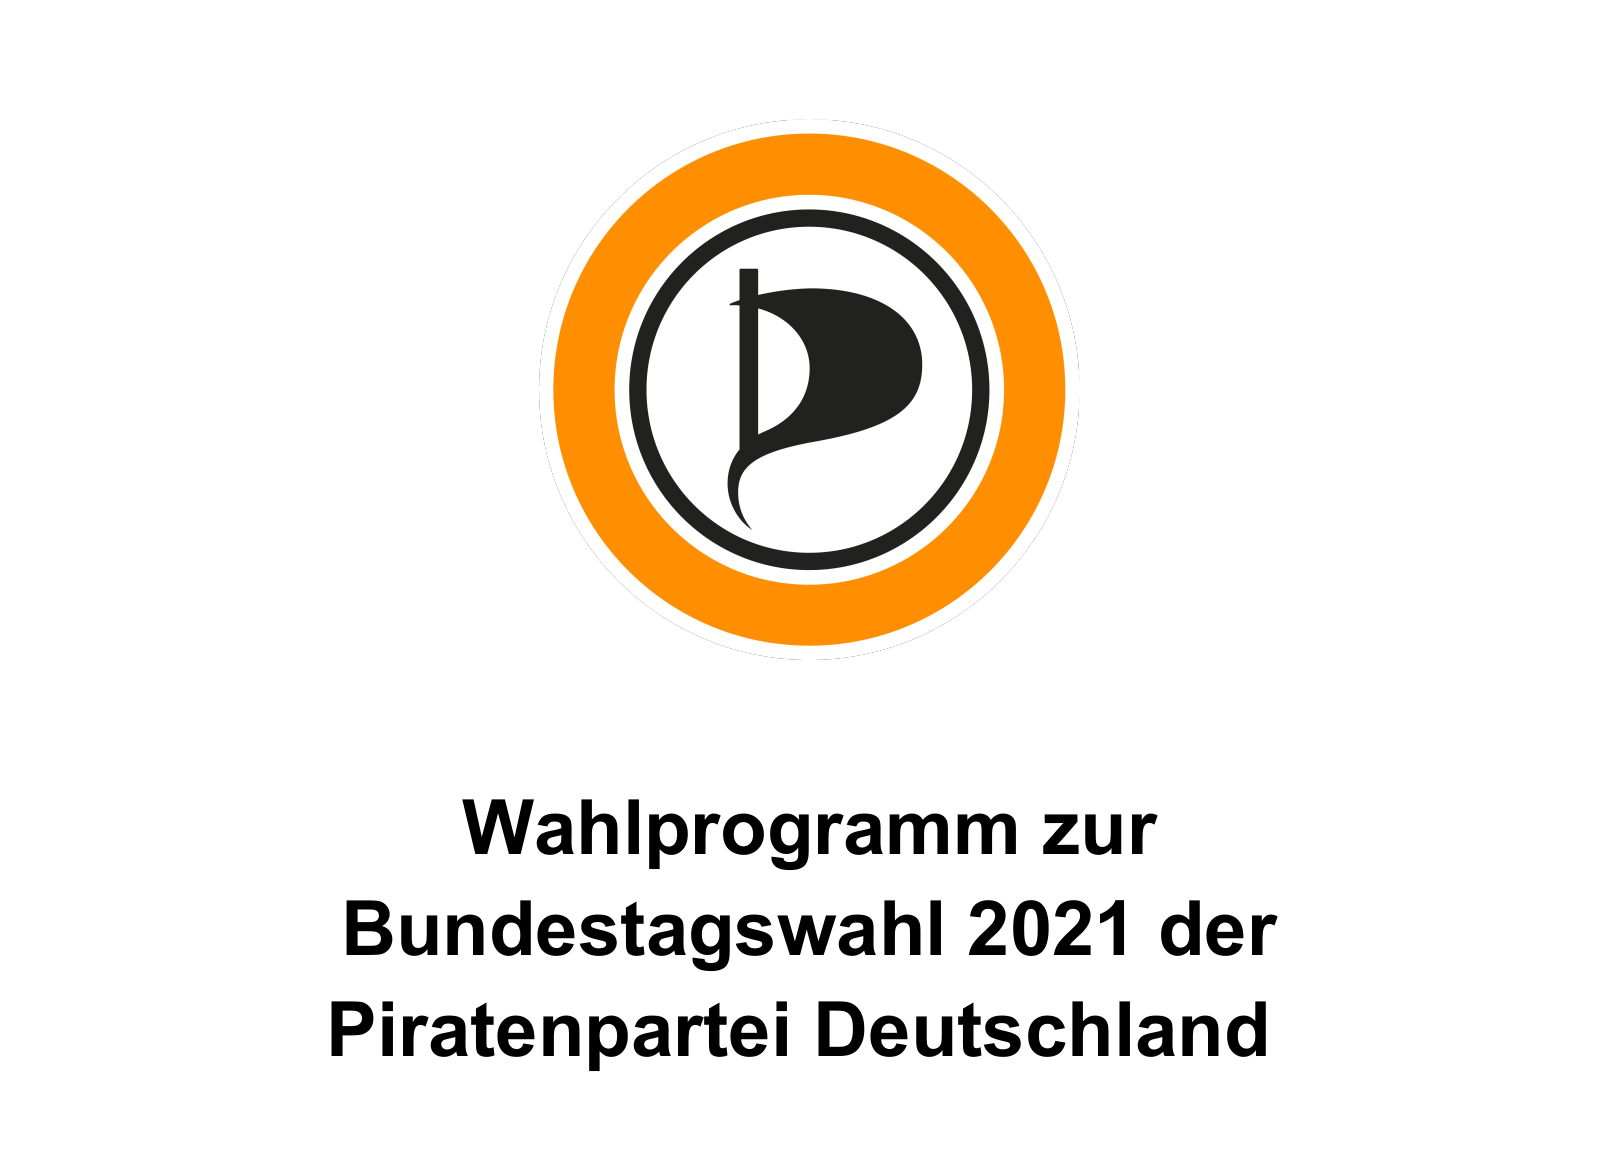 Wahlprogramm zur Bundestagswahl 2021 der Piratenpartei Deutschland